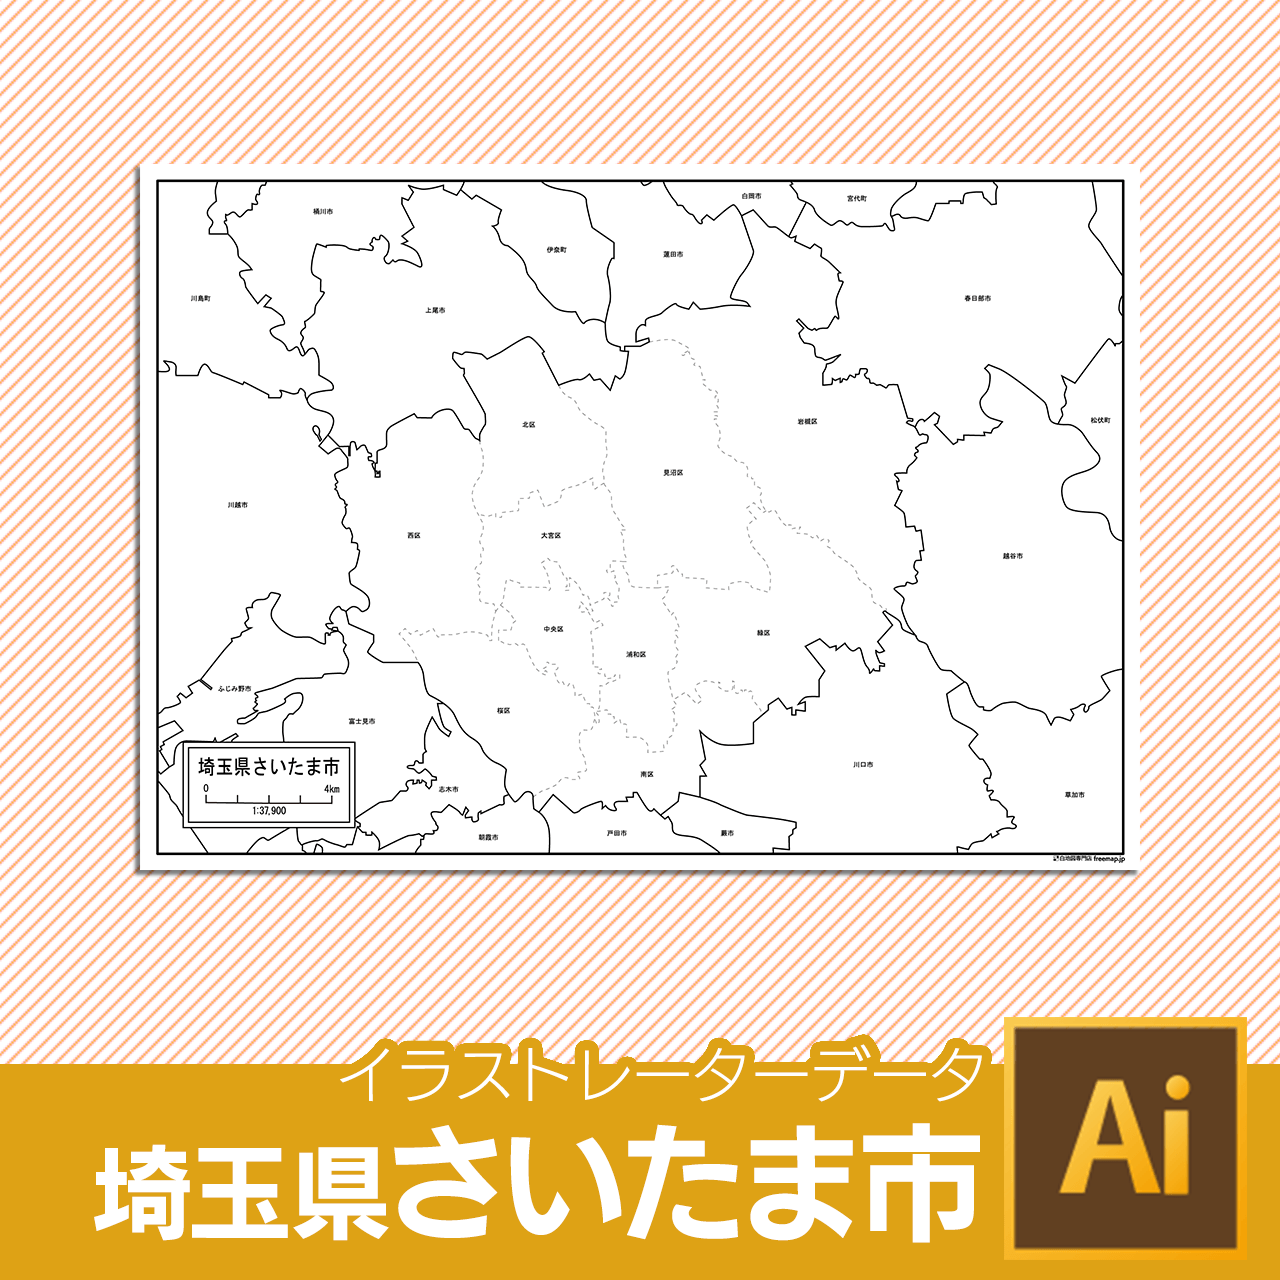 埼玉県さいたま市のaiデータのサムネイル画像